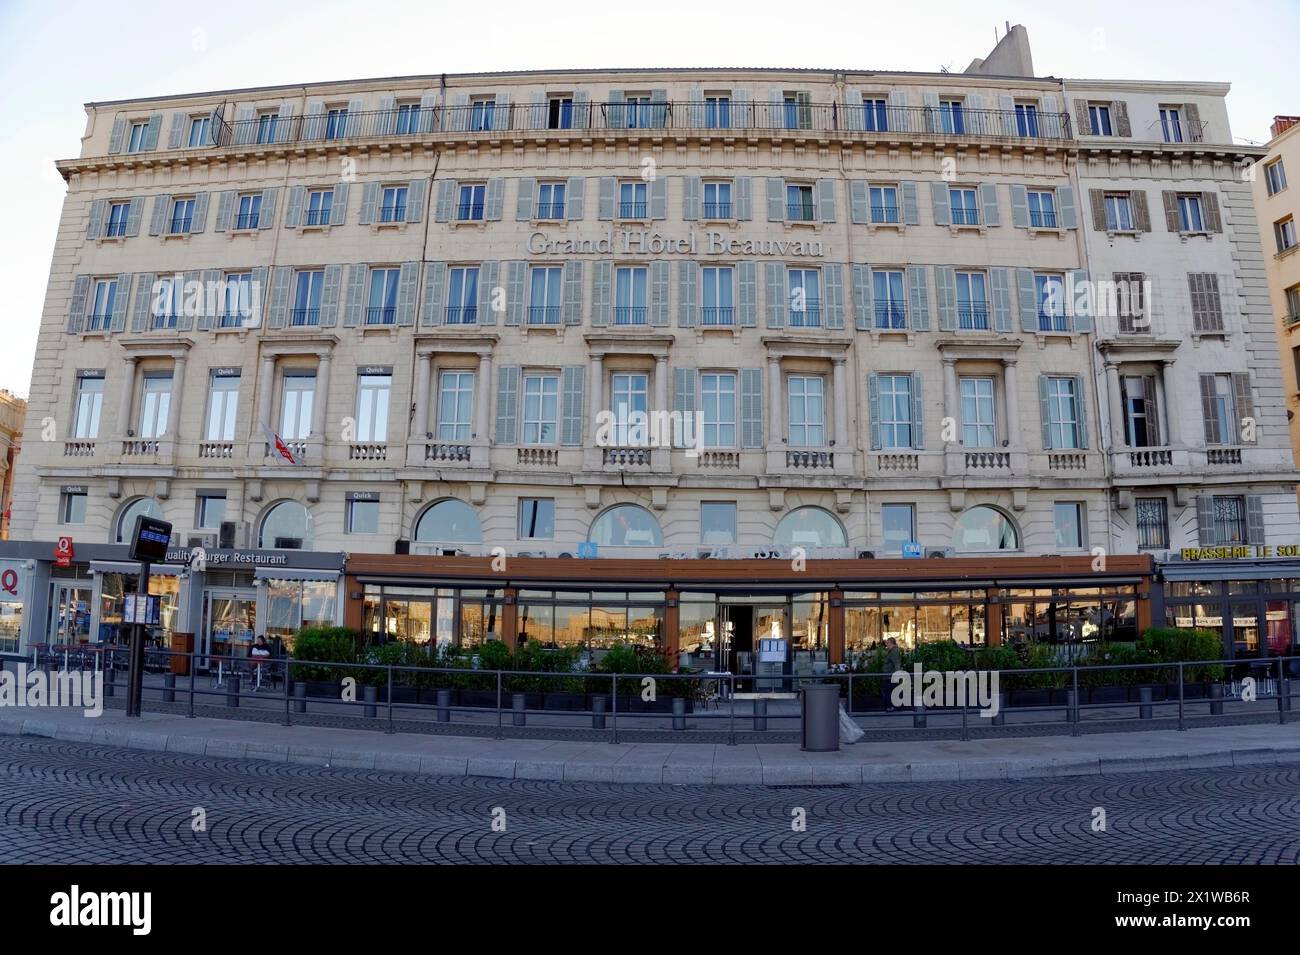 Vue du Grand Hôtel Beauvau avec café au premier plan, Marseille, Département Bouches-du-Rhône, région Provence-Alpes-Côte d'Azur, France Banque D'Images